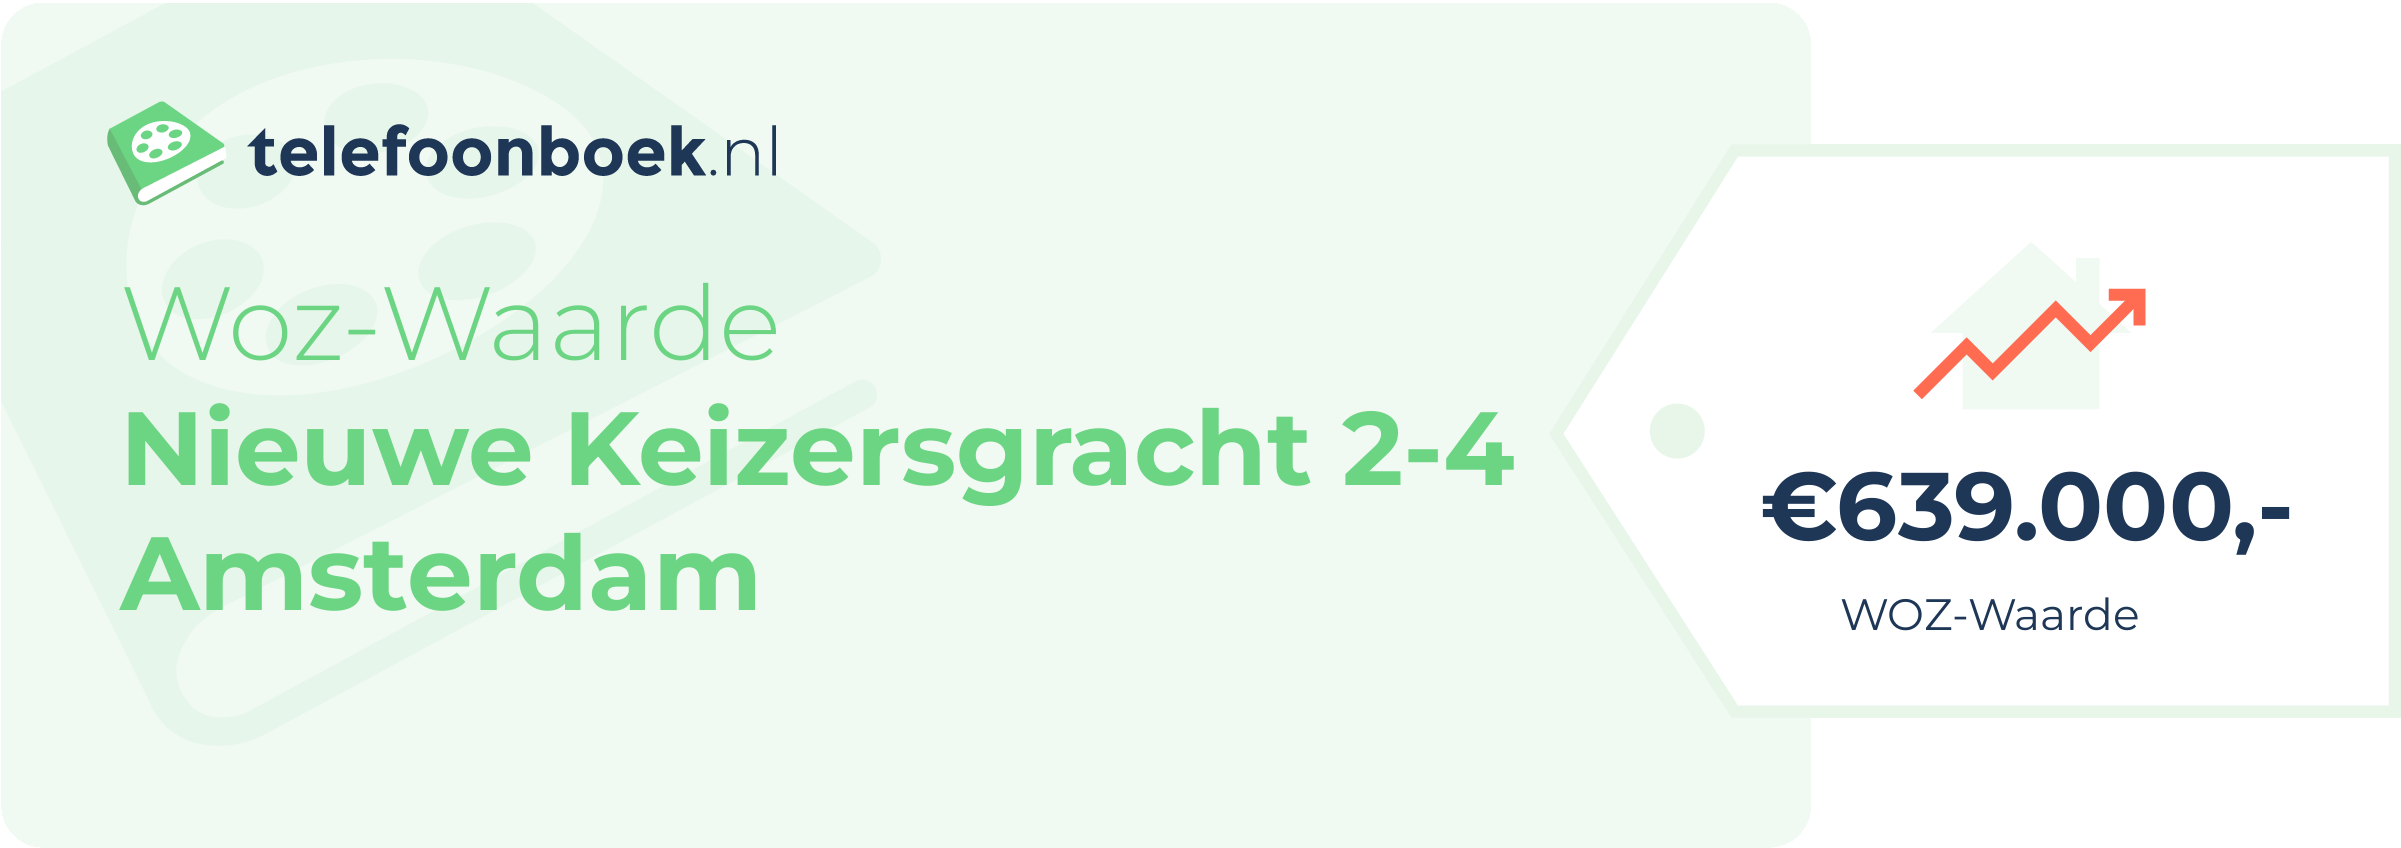 WOZ-waarde Nieuwe Keizersgracht 2-4 Amsterdam